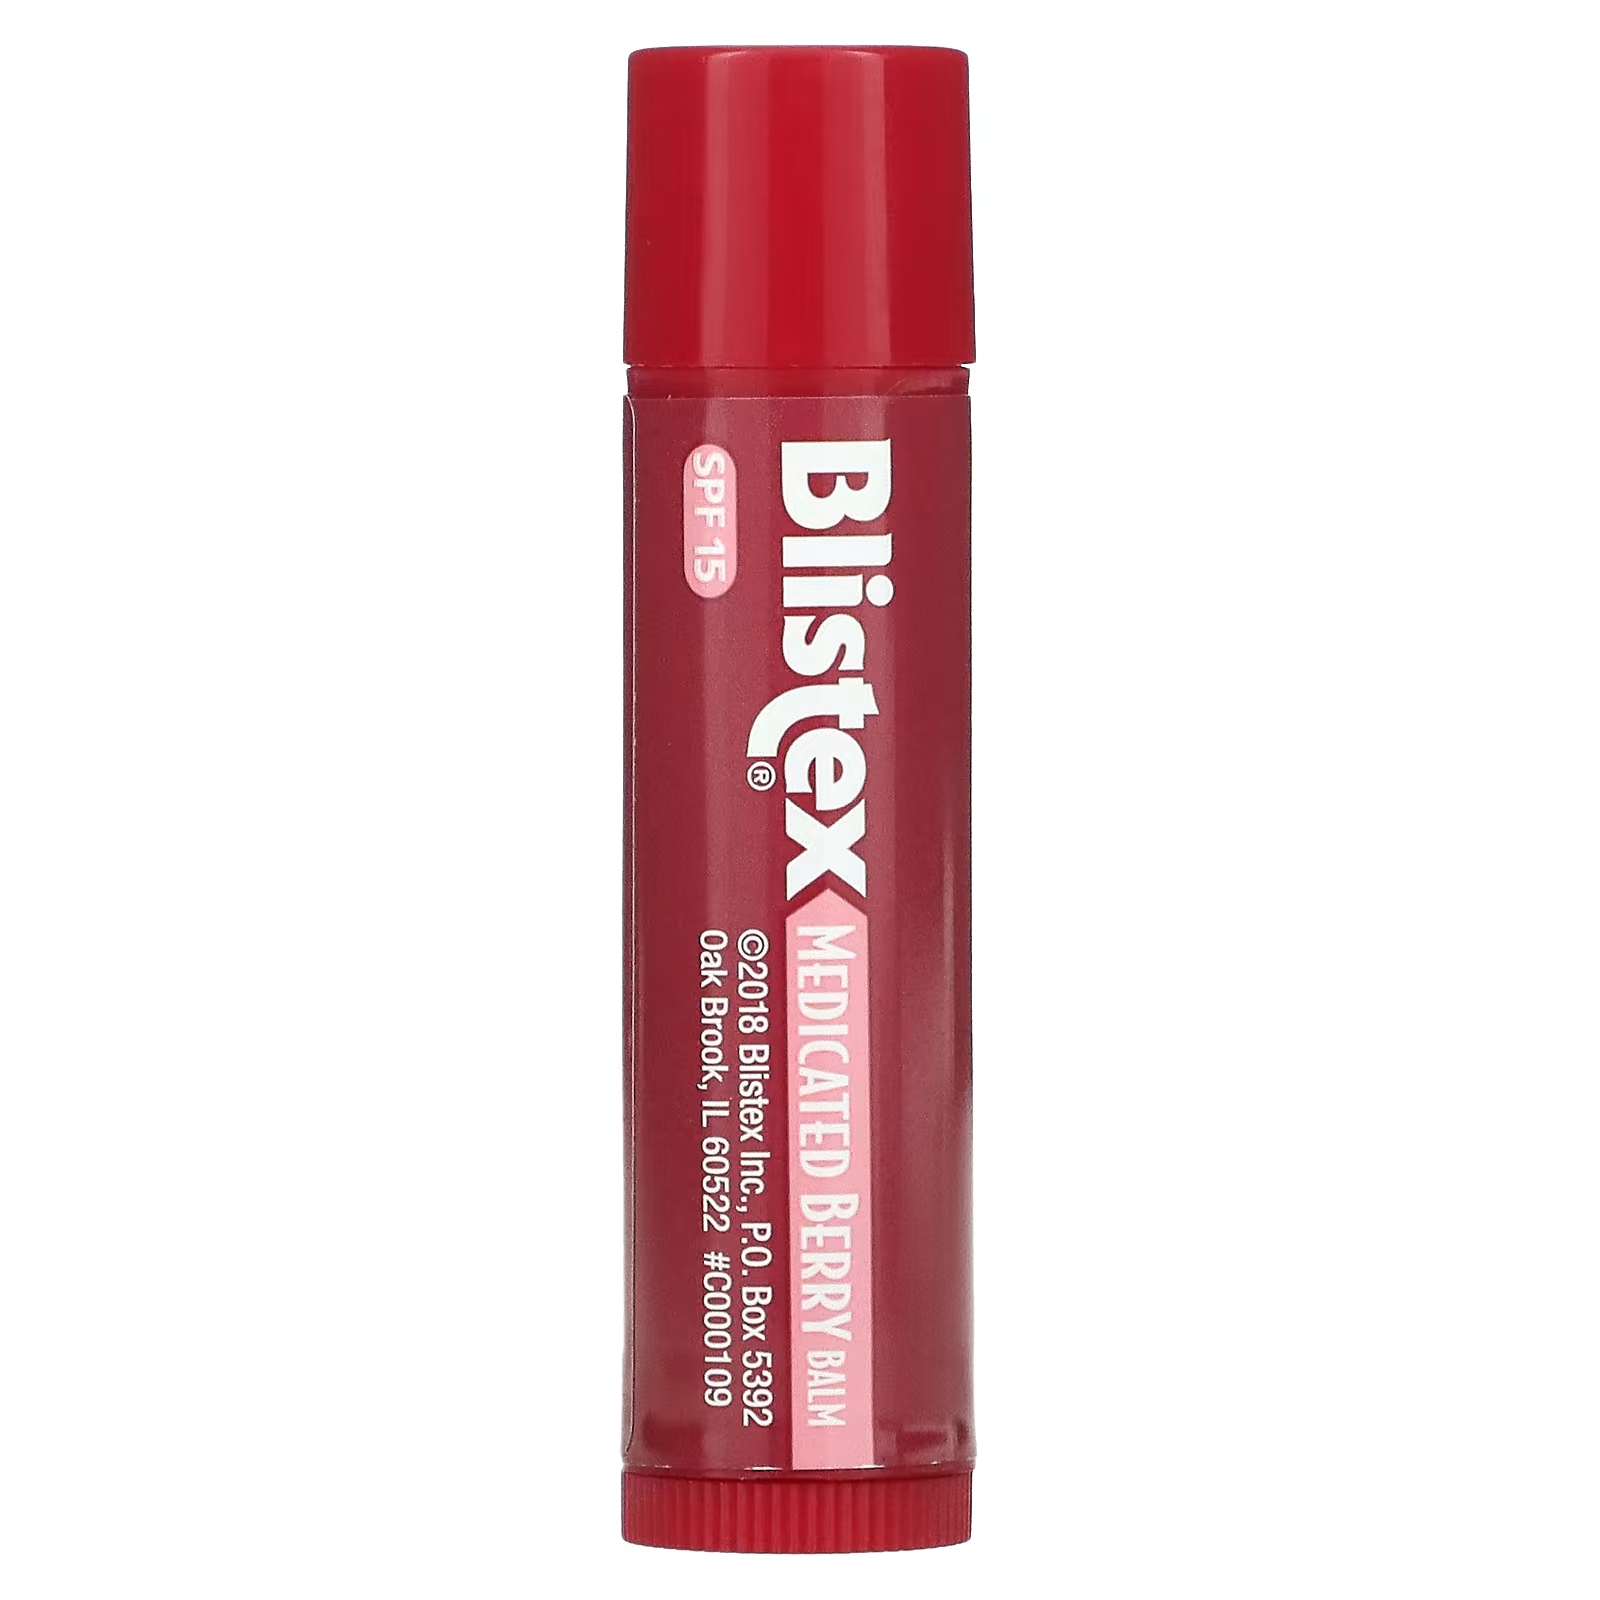 Blistex Лекарственное средство для защиты губ/солнцезащитное средство SPF 15 Berry, 0,15 унции (4,25 г) blistex лекарственное средство для защиты губ солнцезащитное средство spf 15 berry 0 15 унции 4 25 г